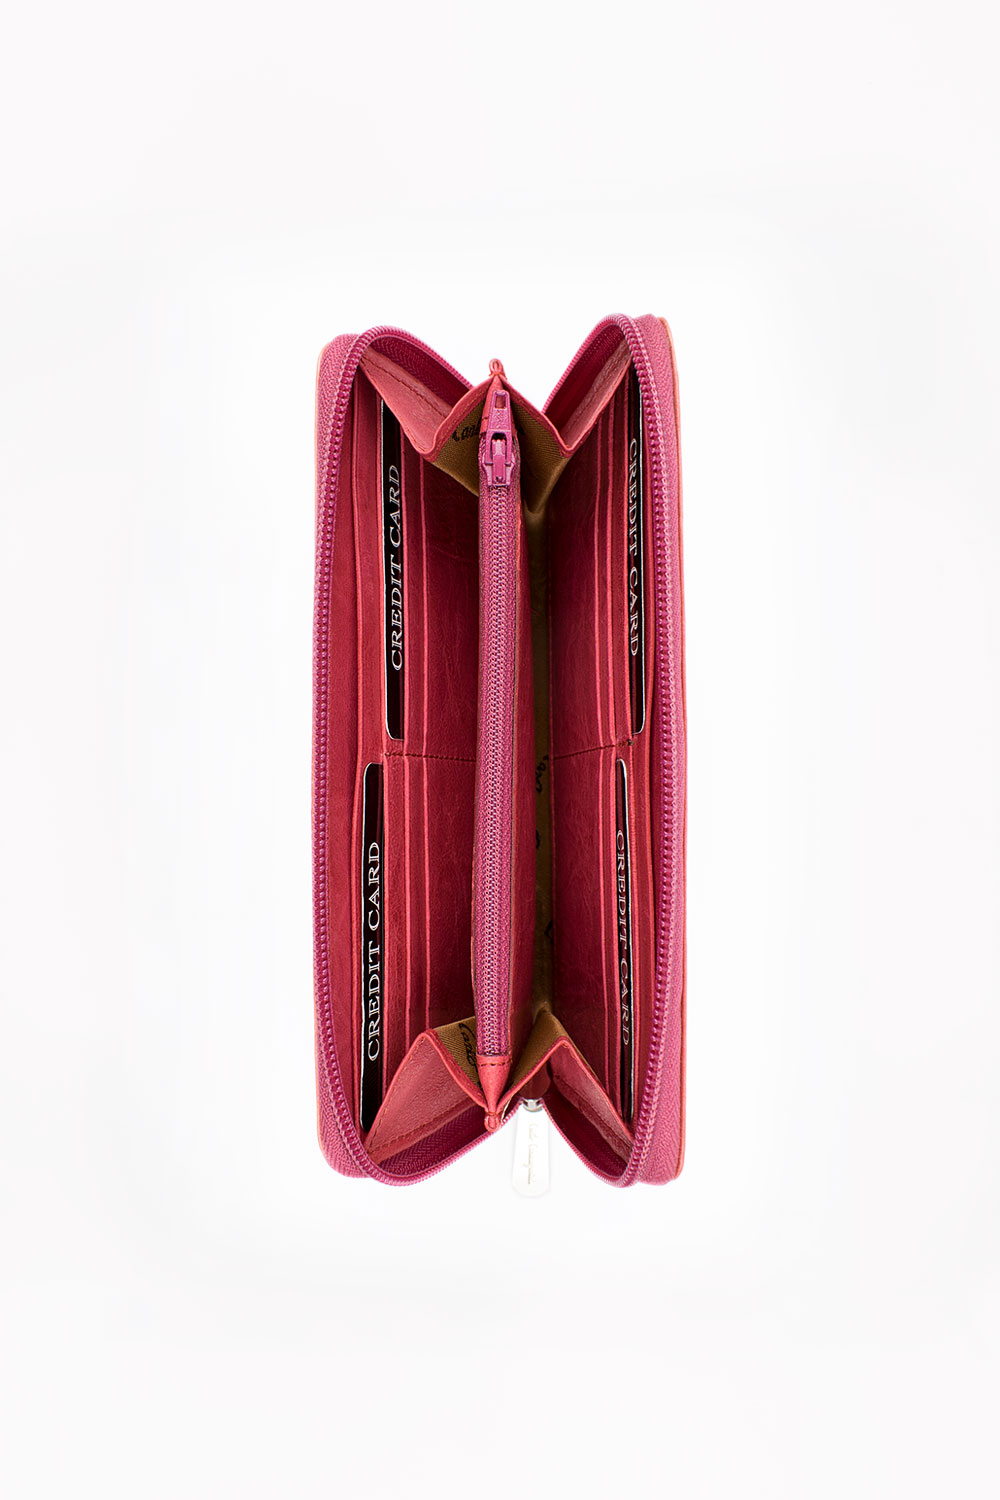 ADRIMAR Firenze - Women Leather Zipper Wallet by Carlo Carmagnini